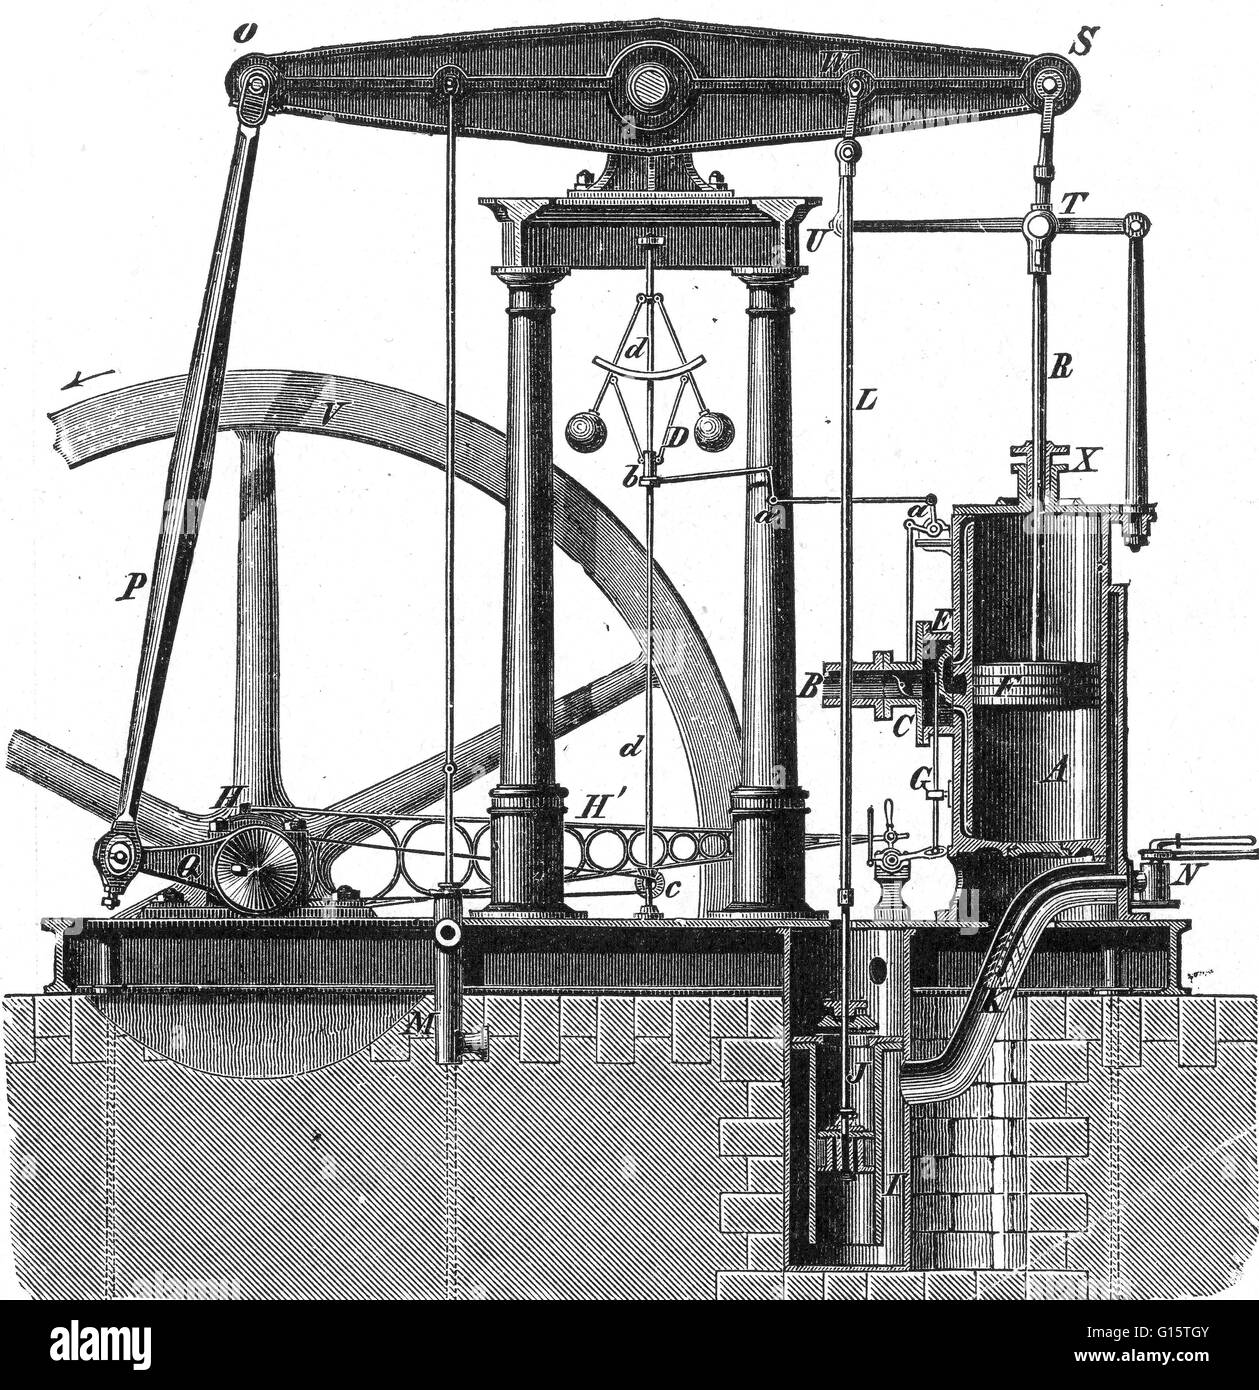 Il Watt motore a vapore è stato il primo tipo di motore a vapore per fare uso di vapore ad una pressione di poco al di sopra della pressione atmosferica, per guidare il pistone è aiutato da un vuoto parziale. Migliorare la progettazione del 1712 Newcomen motore, il Watt motore a vapore, sviluppato spora Foto Stock